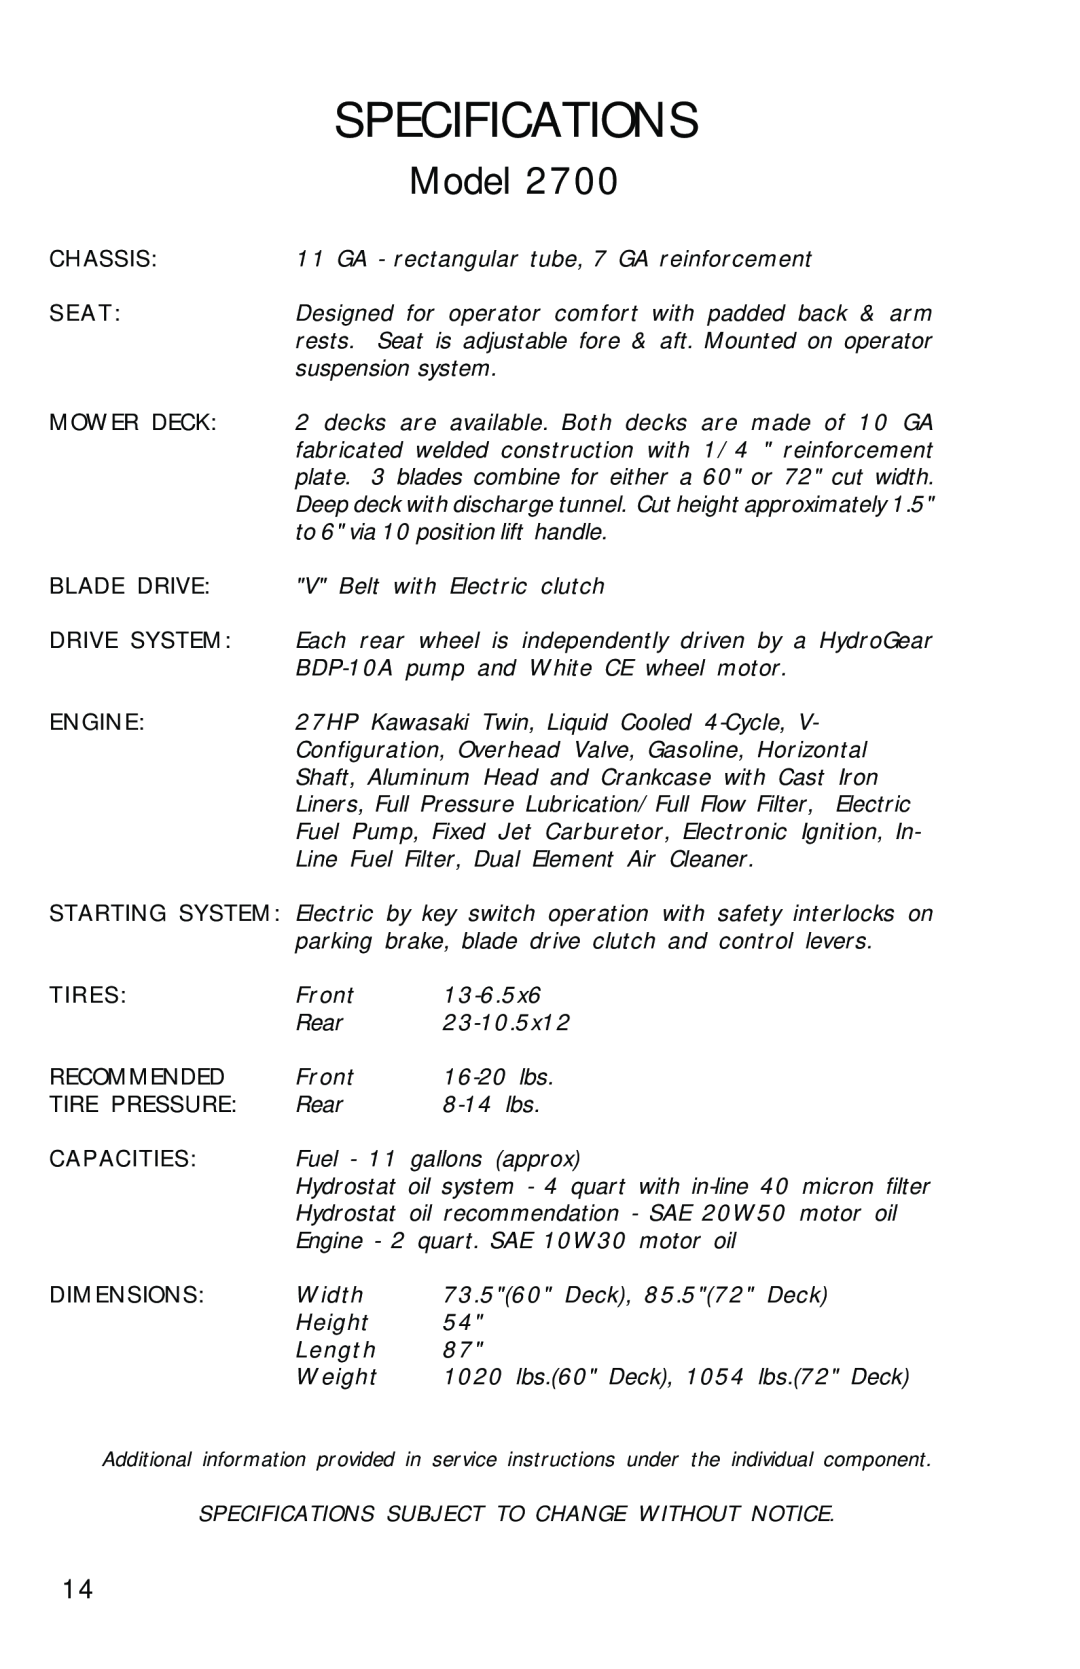 Dixon ZTR 2700, 12828-0603 manual Specifications, Model 